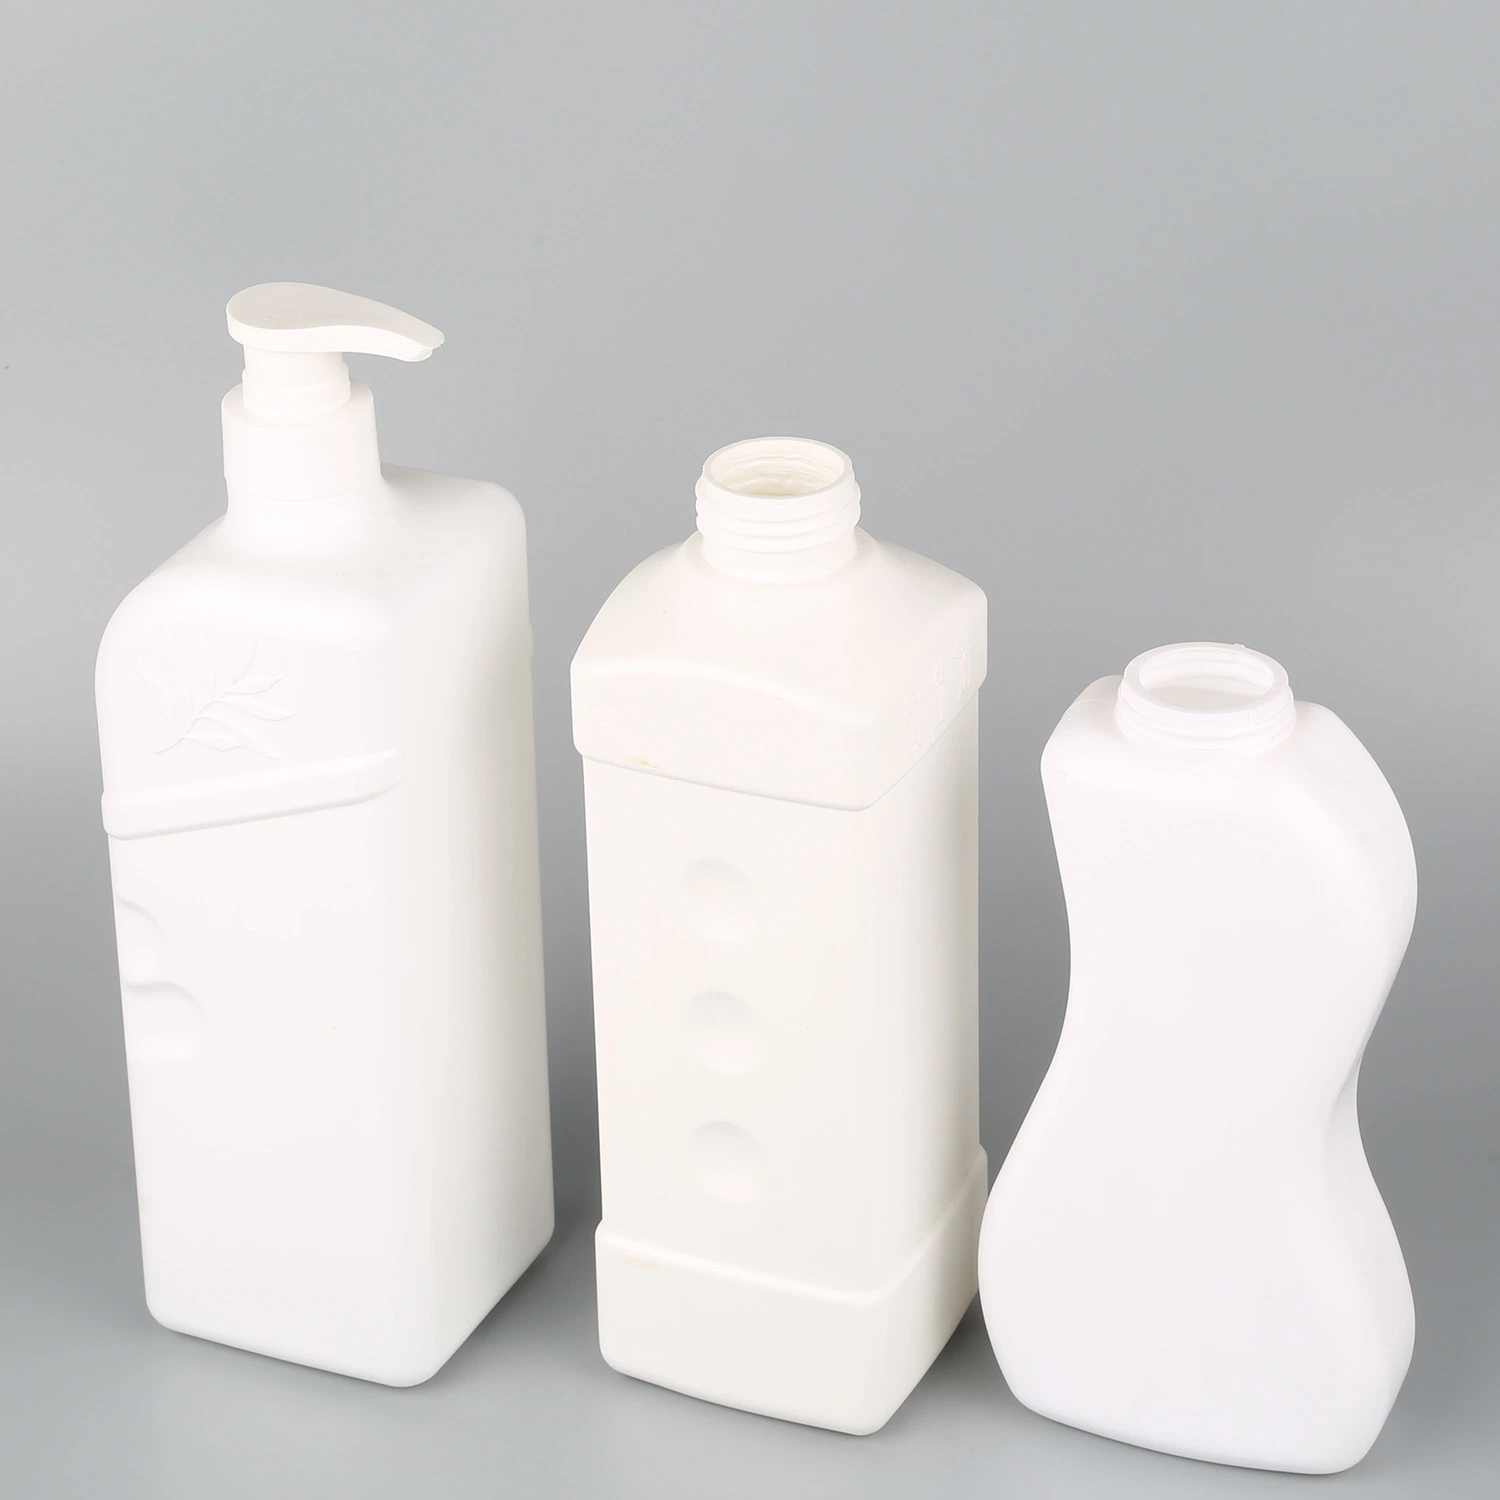 Botellas de Pet Blanco personalizado para cosméticos/Skin Care Productos